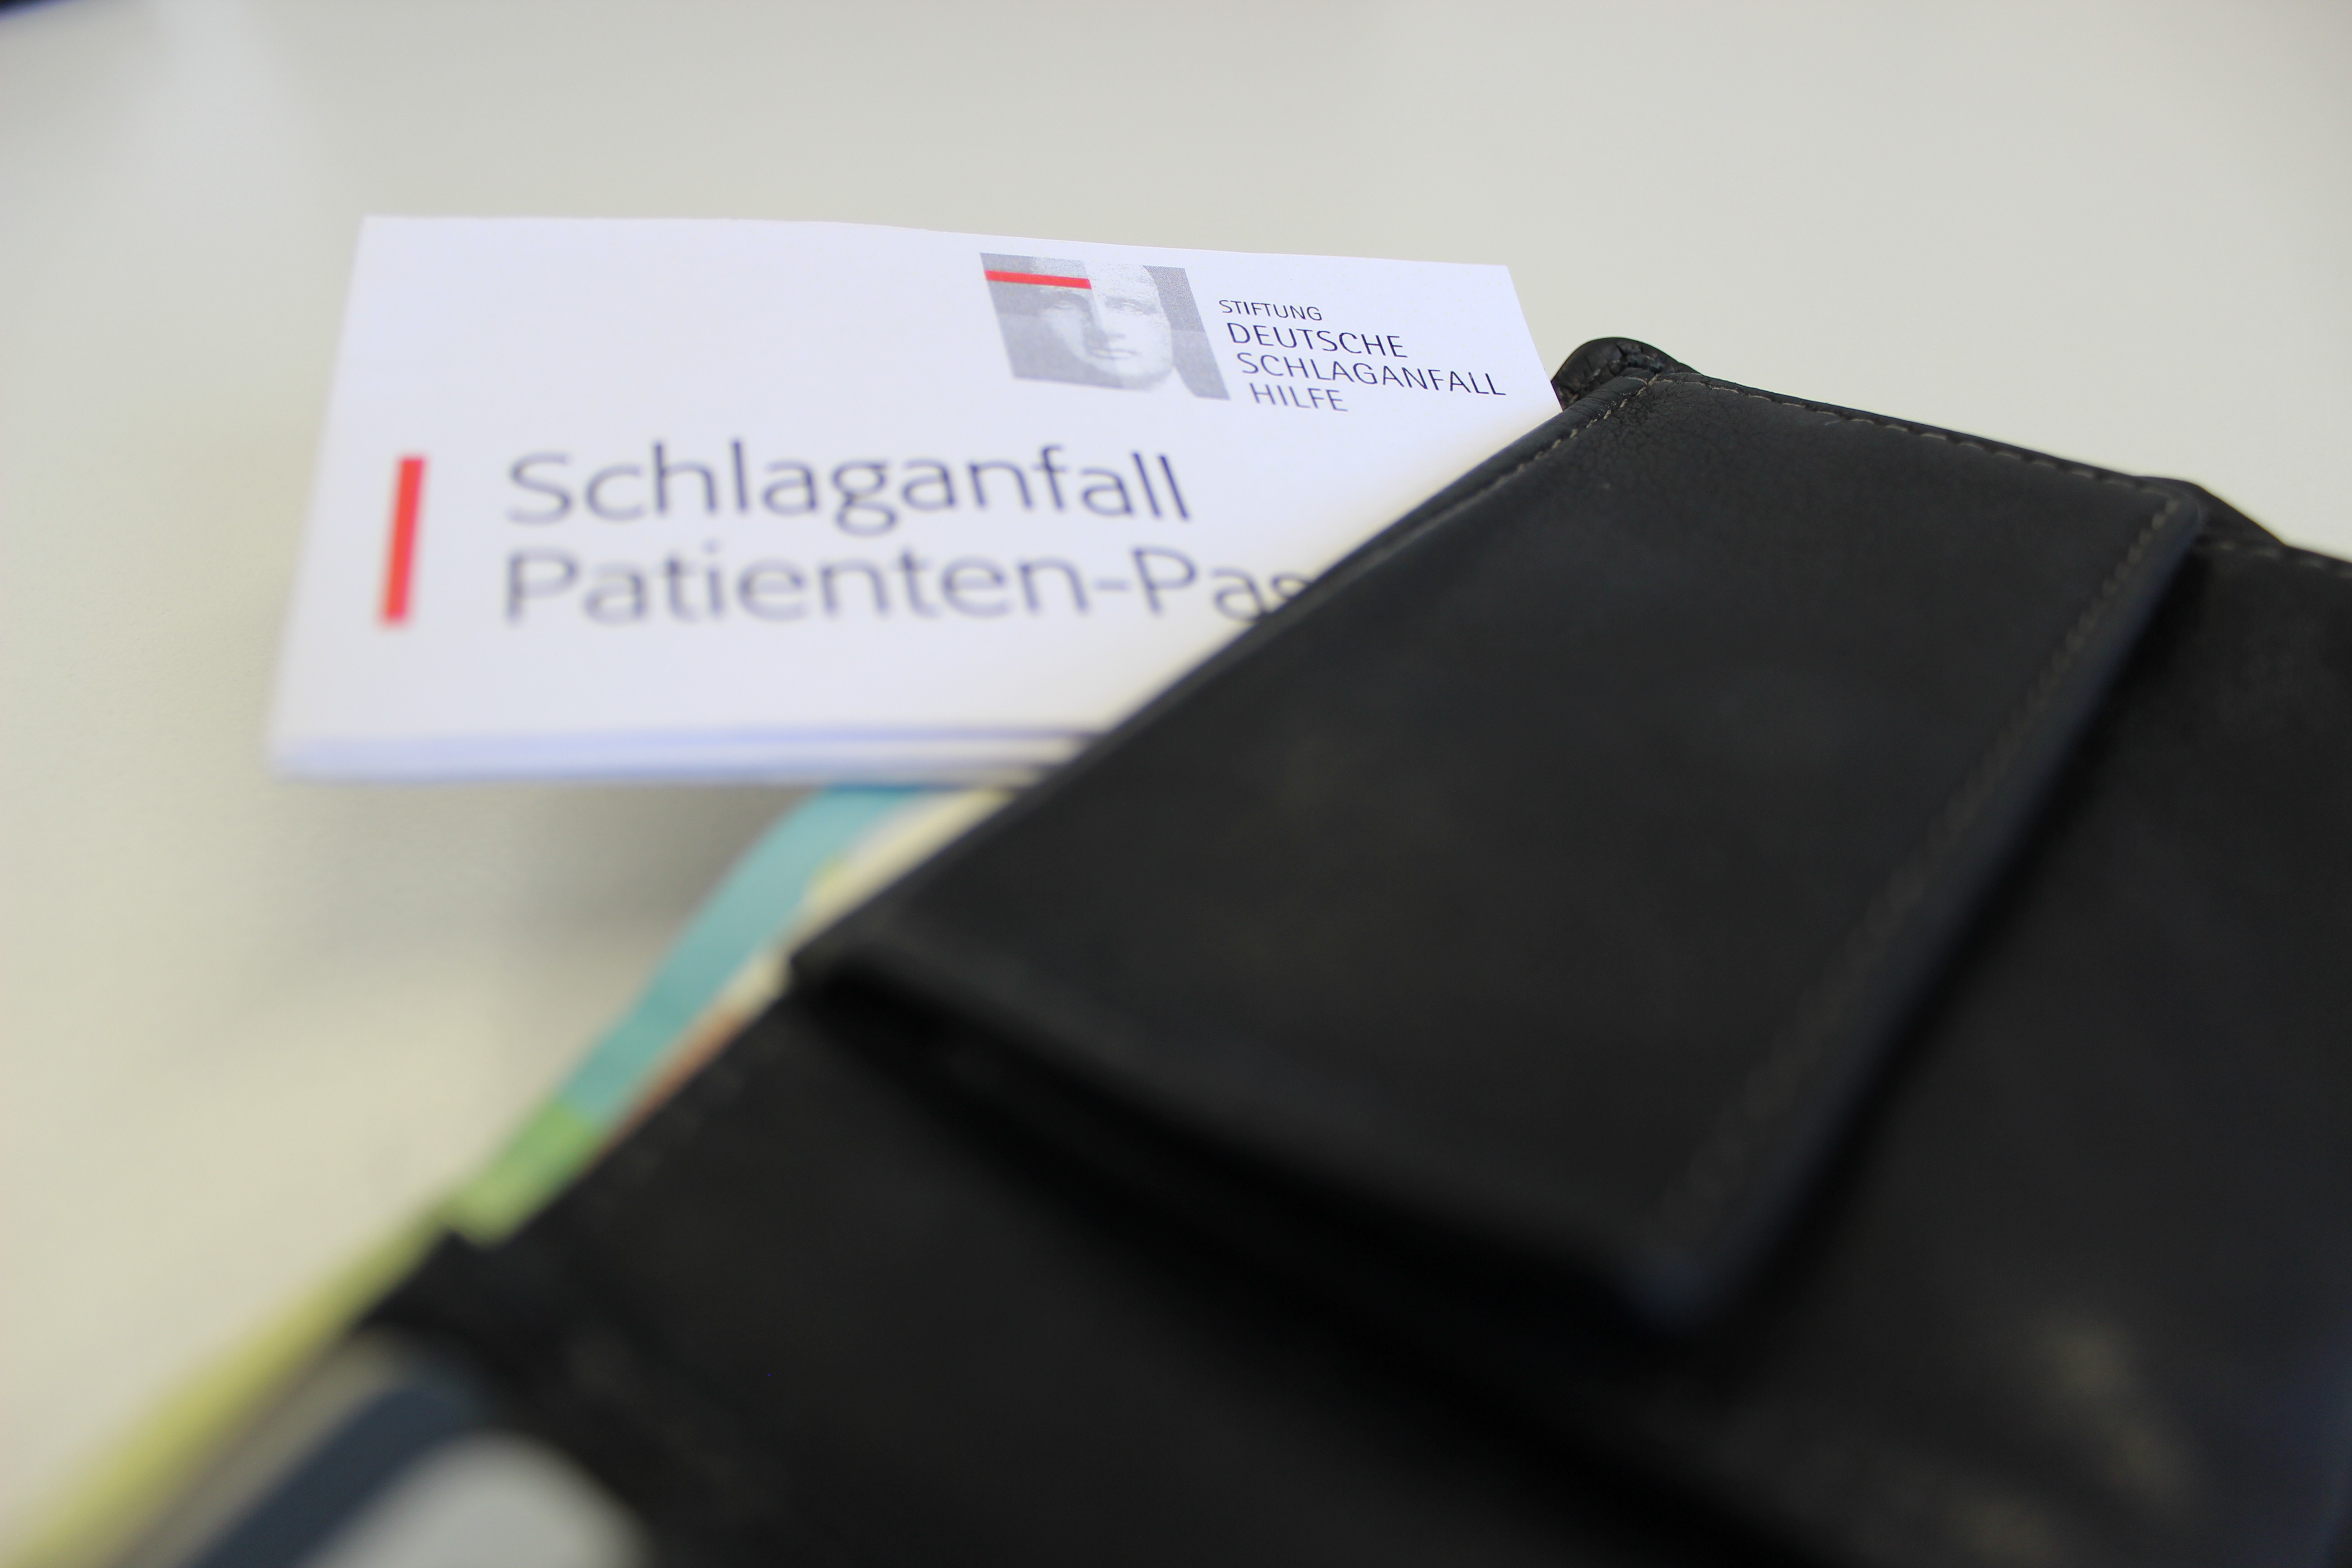 er Schlaganfall-Patienen-Pass der Stiftung Deutsche Schlaganfall-Hilfe